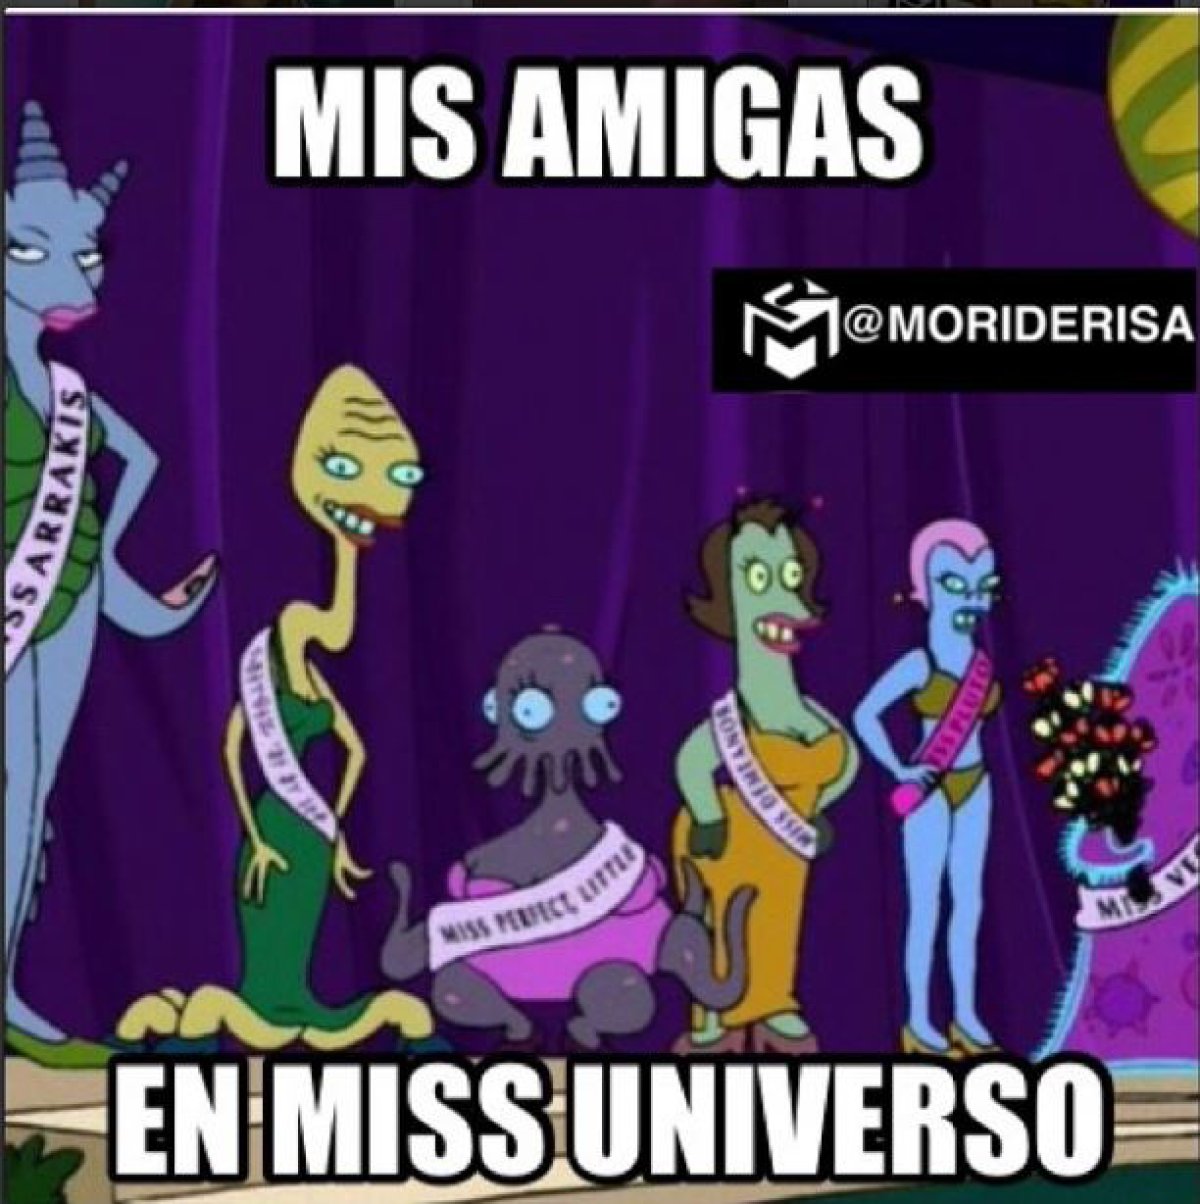 Los memes y trinos más divertidos de Miss Universo 2015